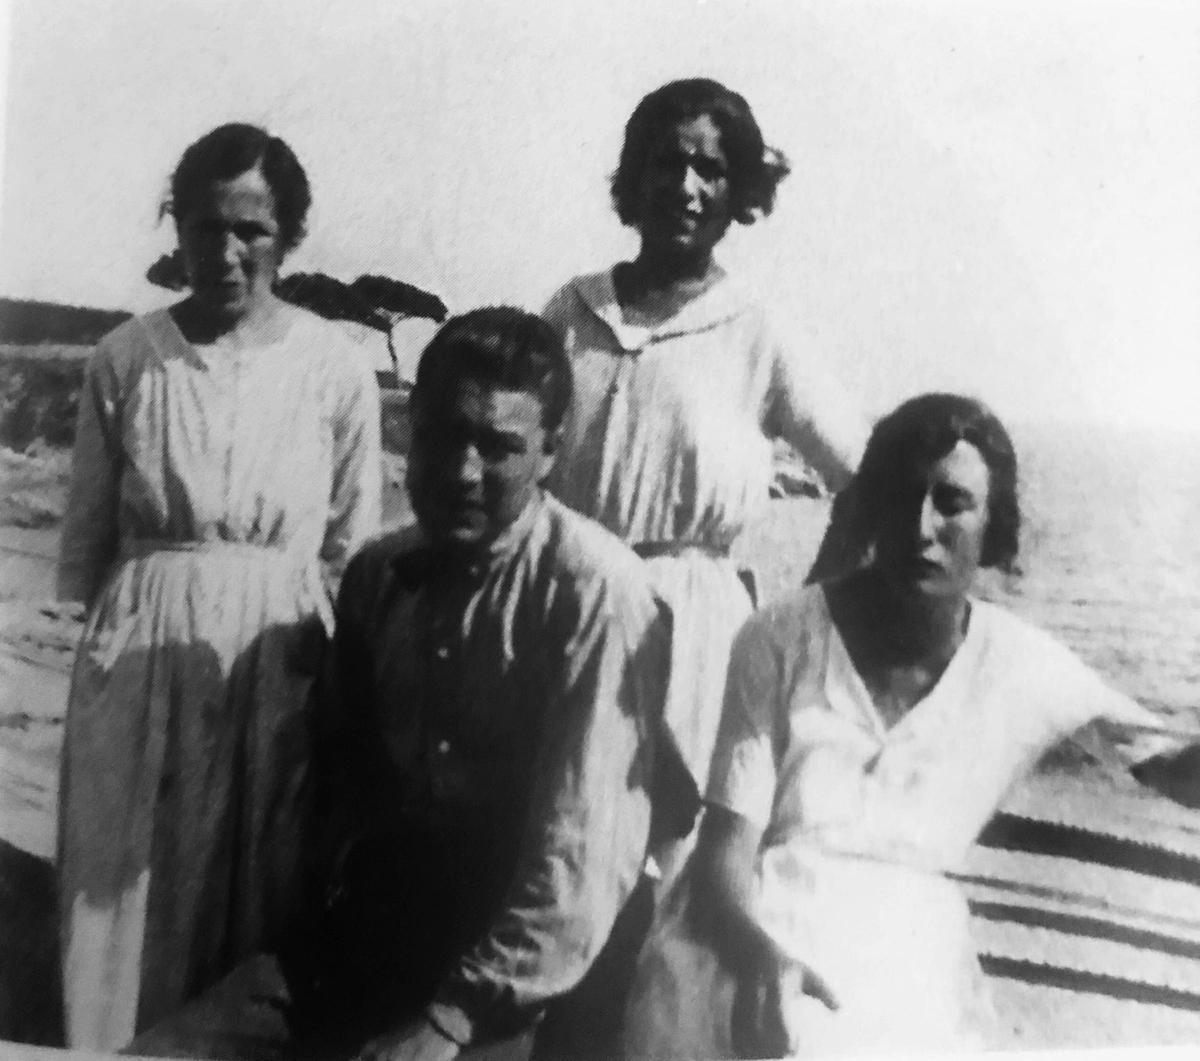 'Un cor furtiu. Vida de Josep Pla'. Maria Casadevall y tres de sus hijos, Josep, Rosa y Maria Pla, en el Canadell hacia 1920